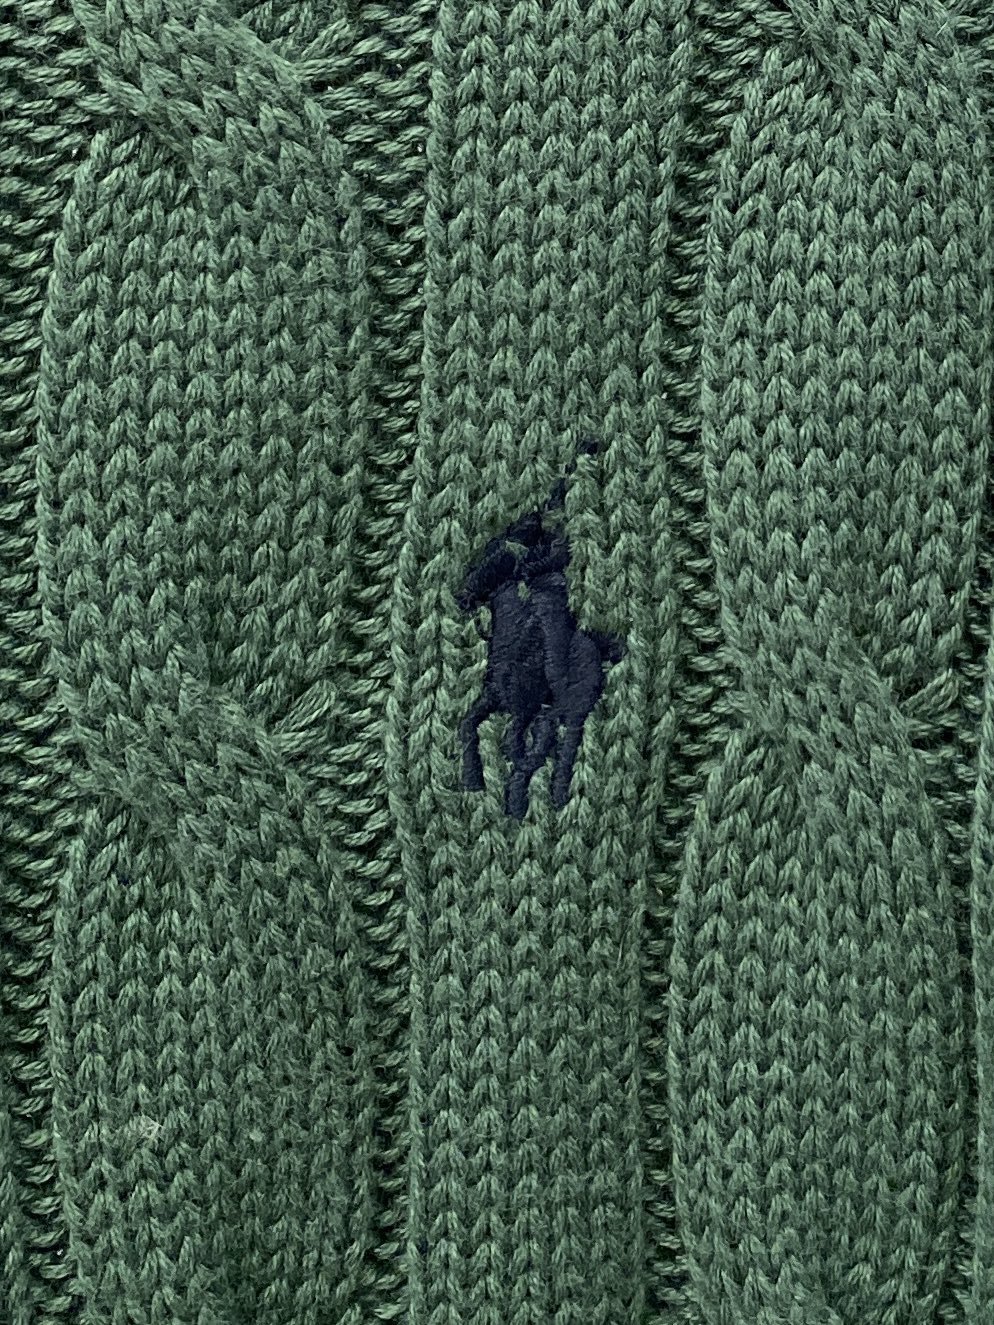 保罗2023秋冬新品羊毛衣具有手感细腻柔软可直接与肌肤接触让暖心的纱线变化出细腻的质感顶级工艺极具特色出